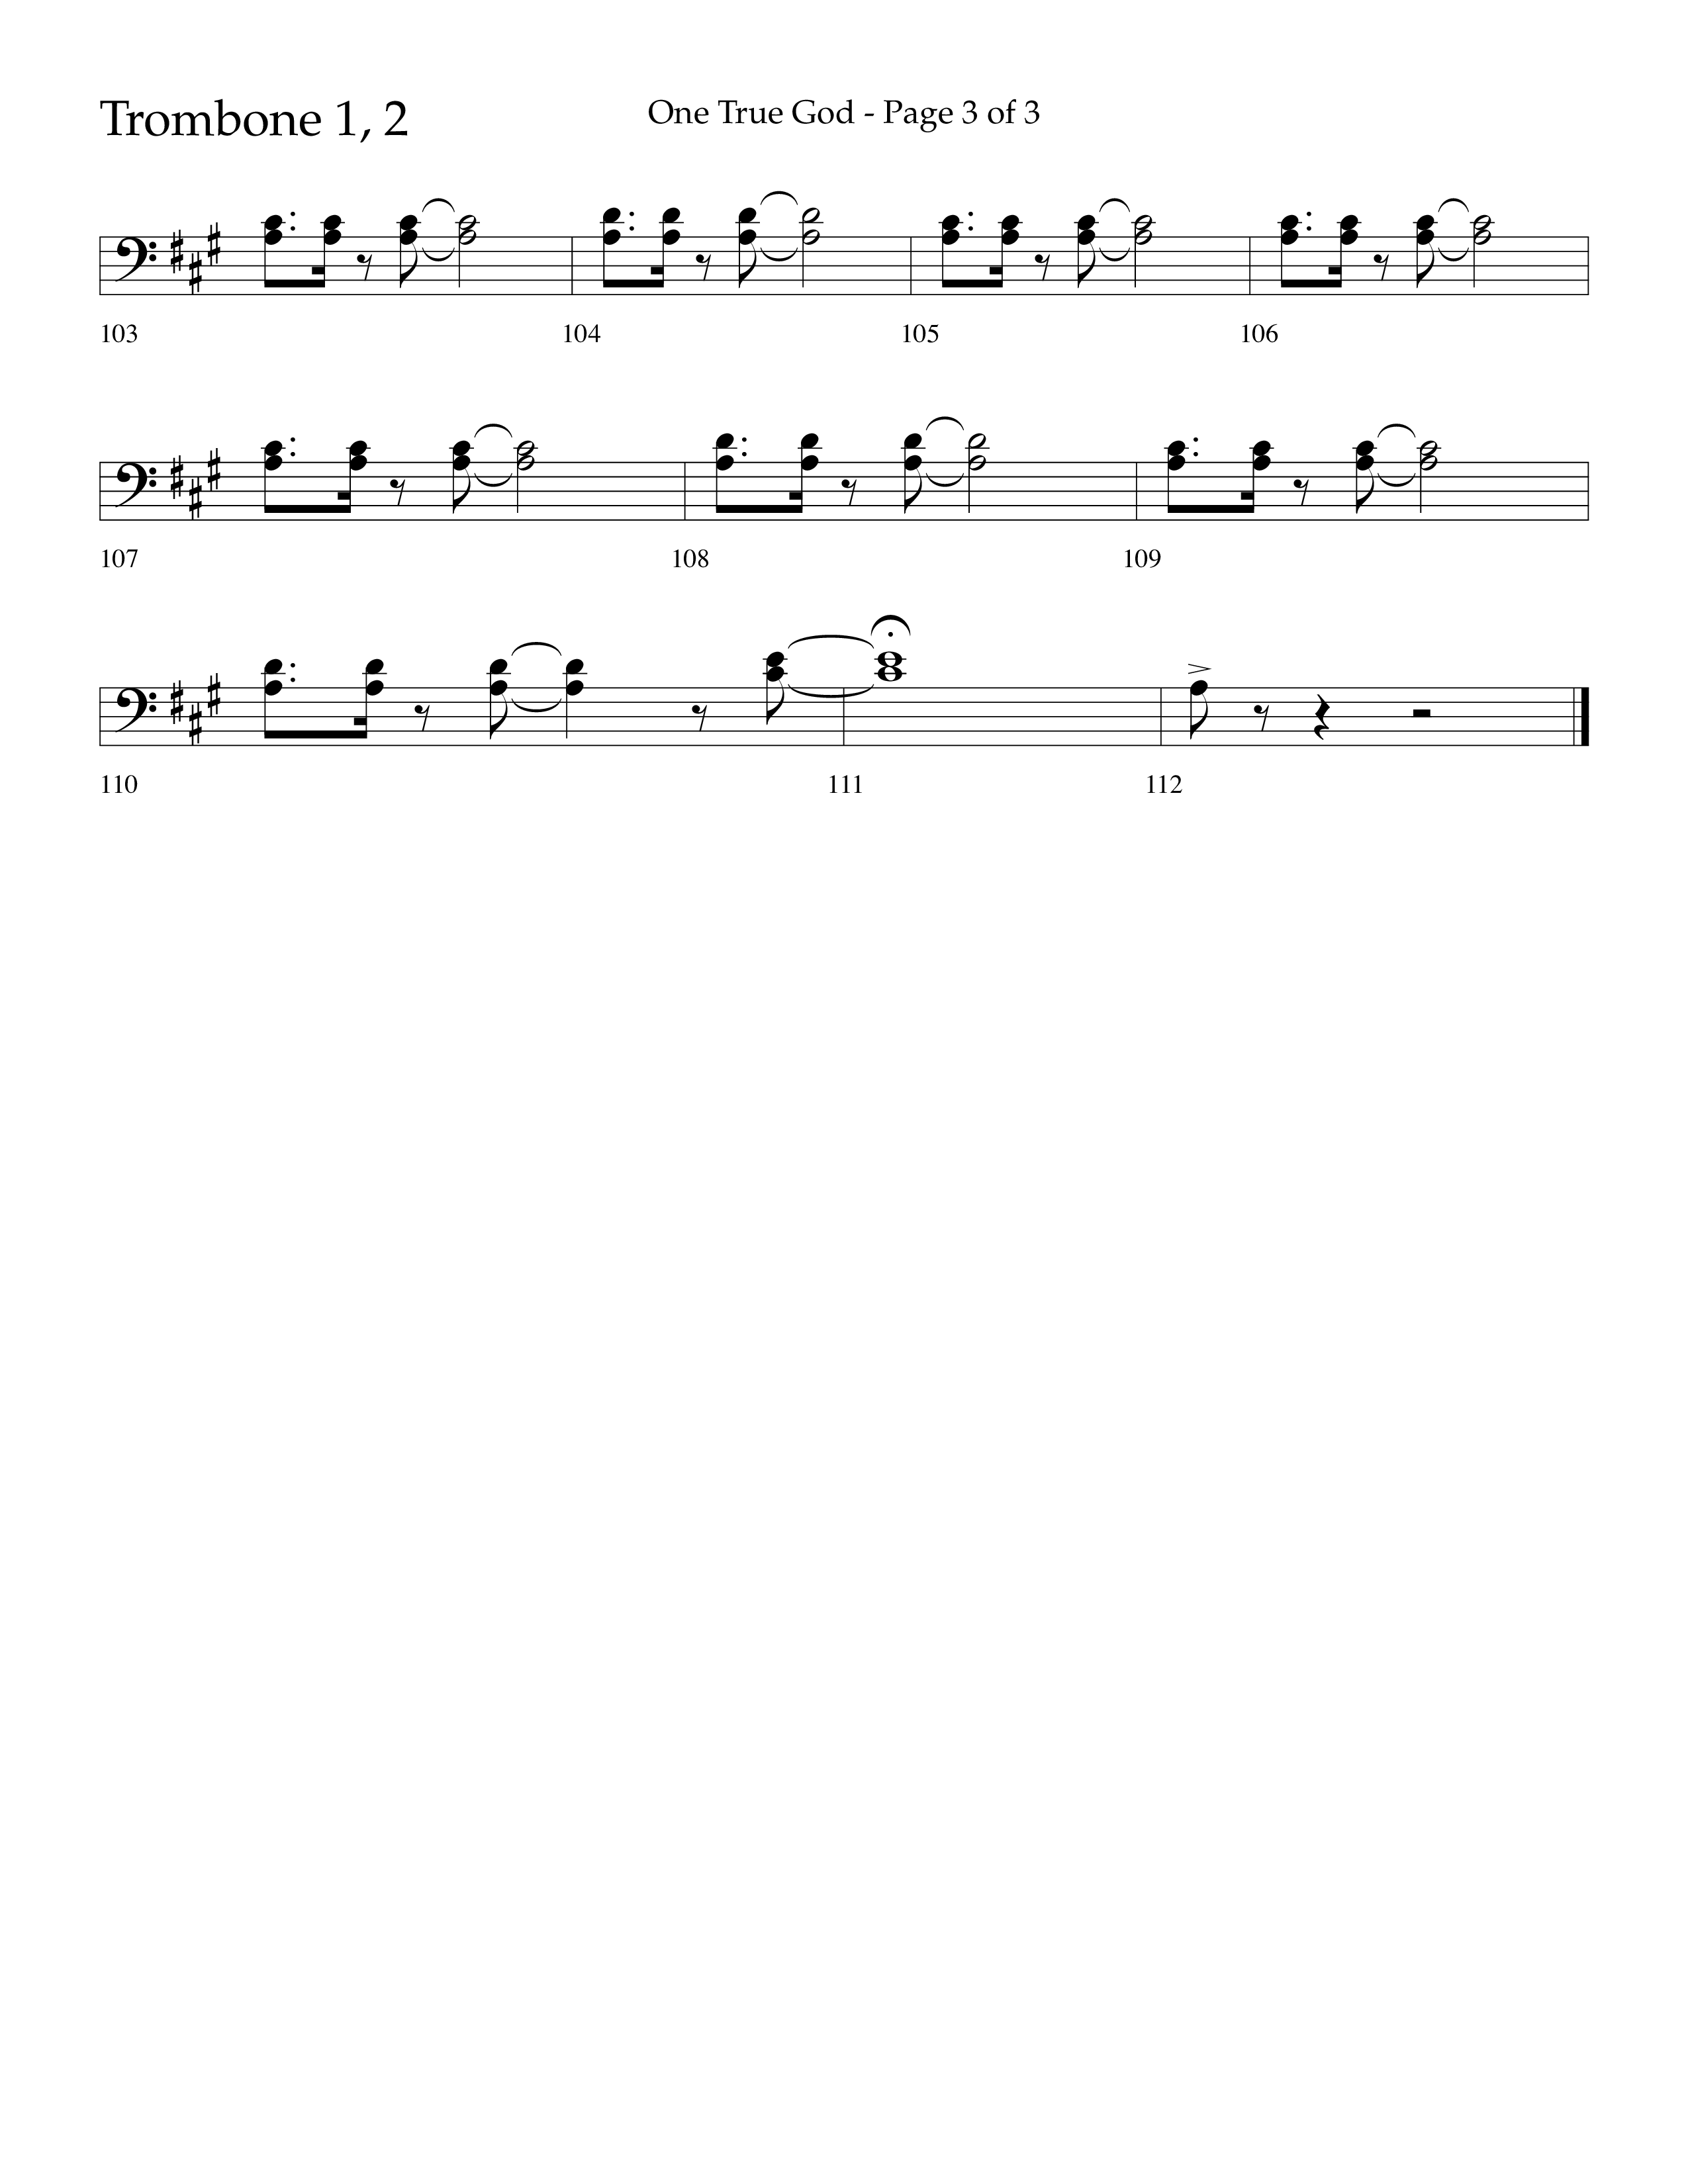 One True God (Choral Anthem SATB) Trombone 1/2 (Lifeway Choral / Arr. Bradley Knight)